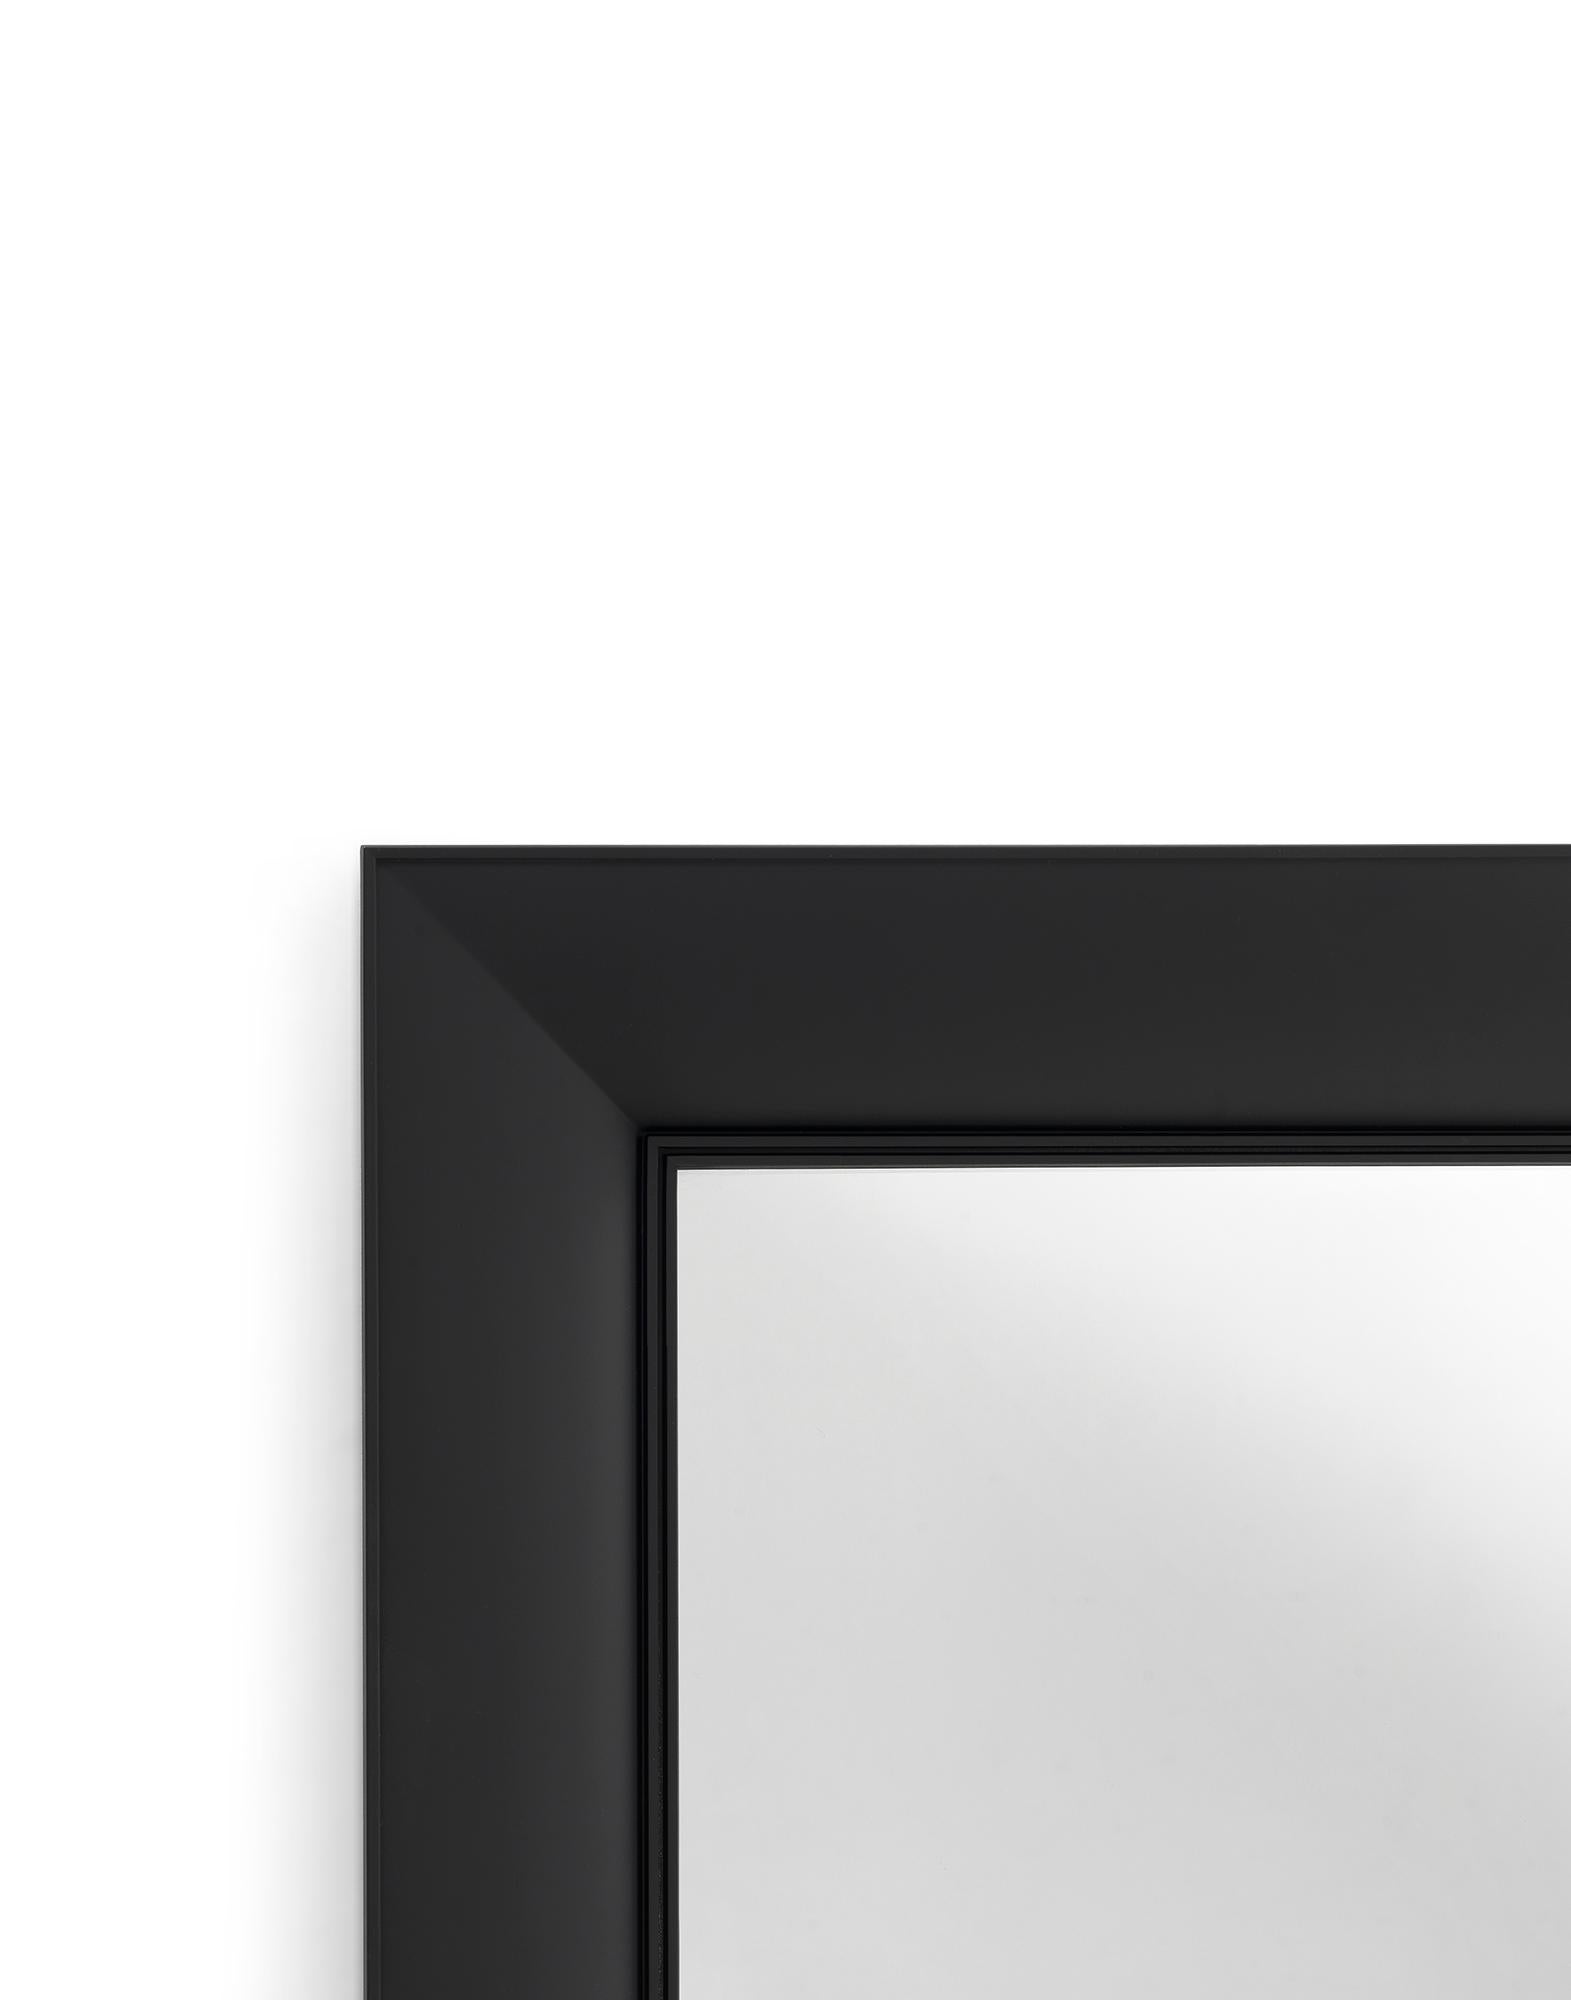 Une série de miroirs muraux rectangulaires bidimensionnels qui évoquent des cadres en cristal fraisé. Les cadres sont en polycarbonate transparent ou coloré avec des sections d'ailes de mouettes et peuvent être suspendus horizontalement ou